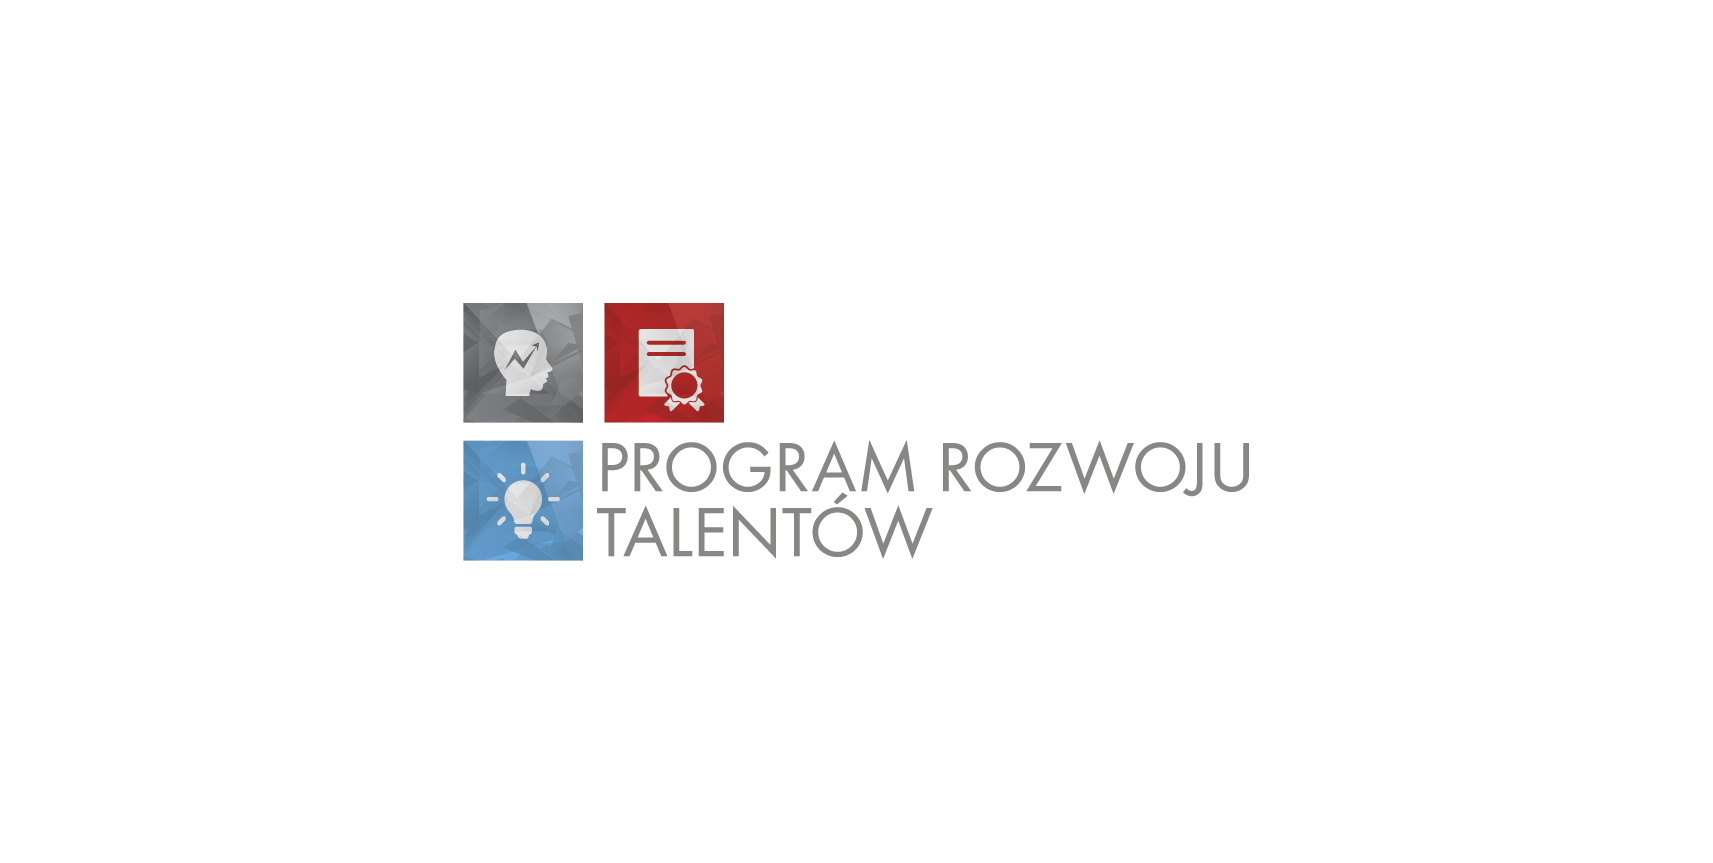 OU_HR_Program_Rozwoju_Talentow.png